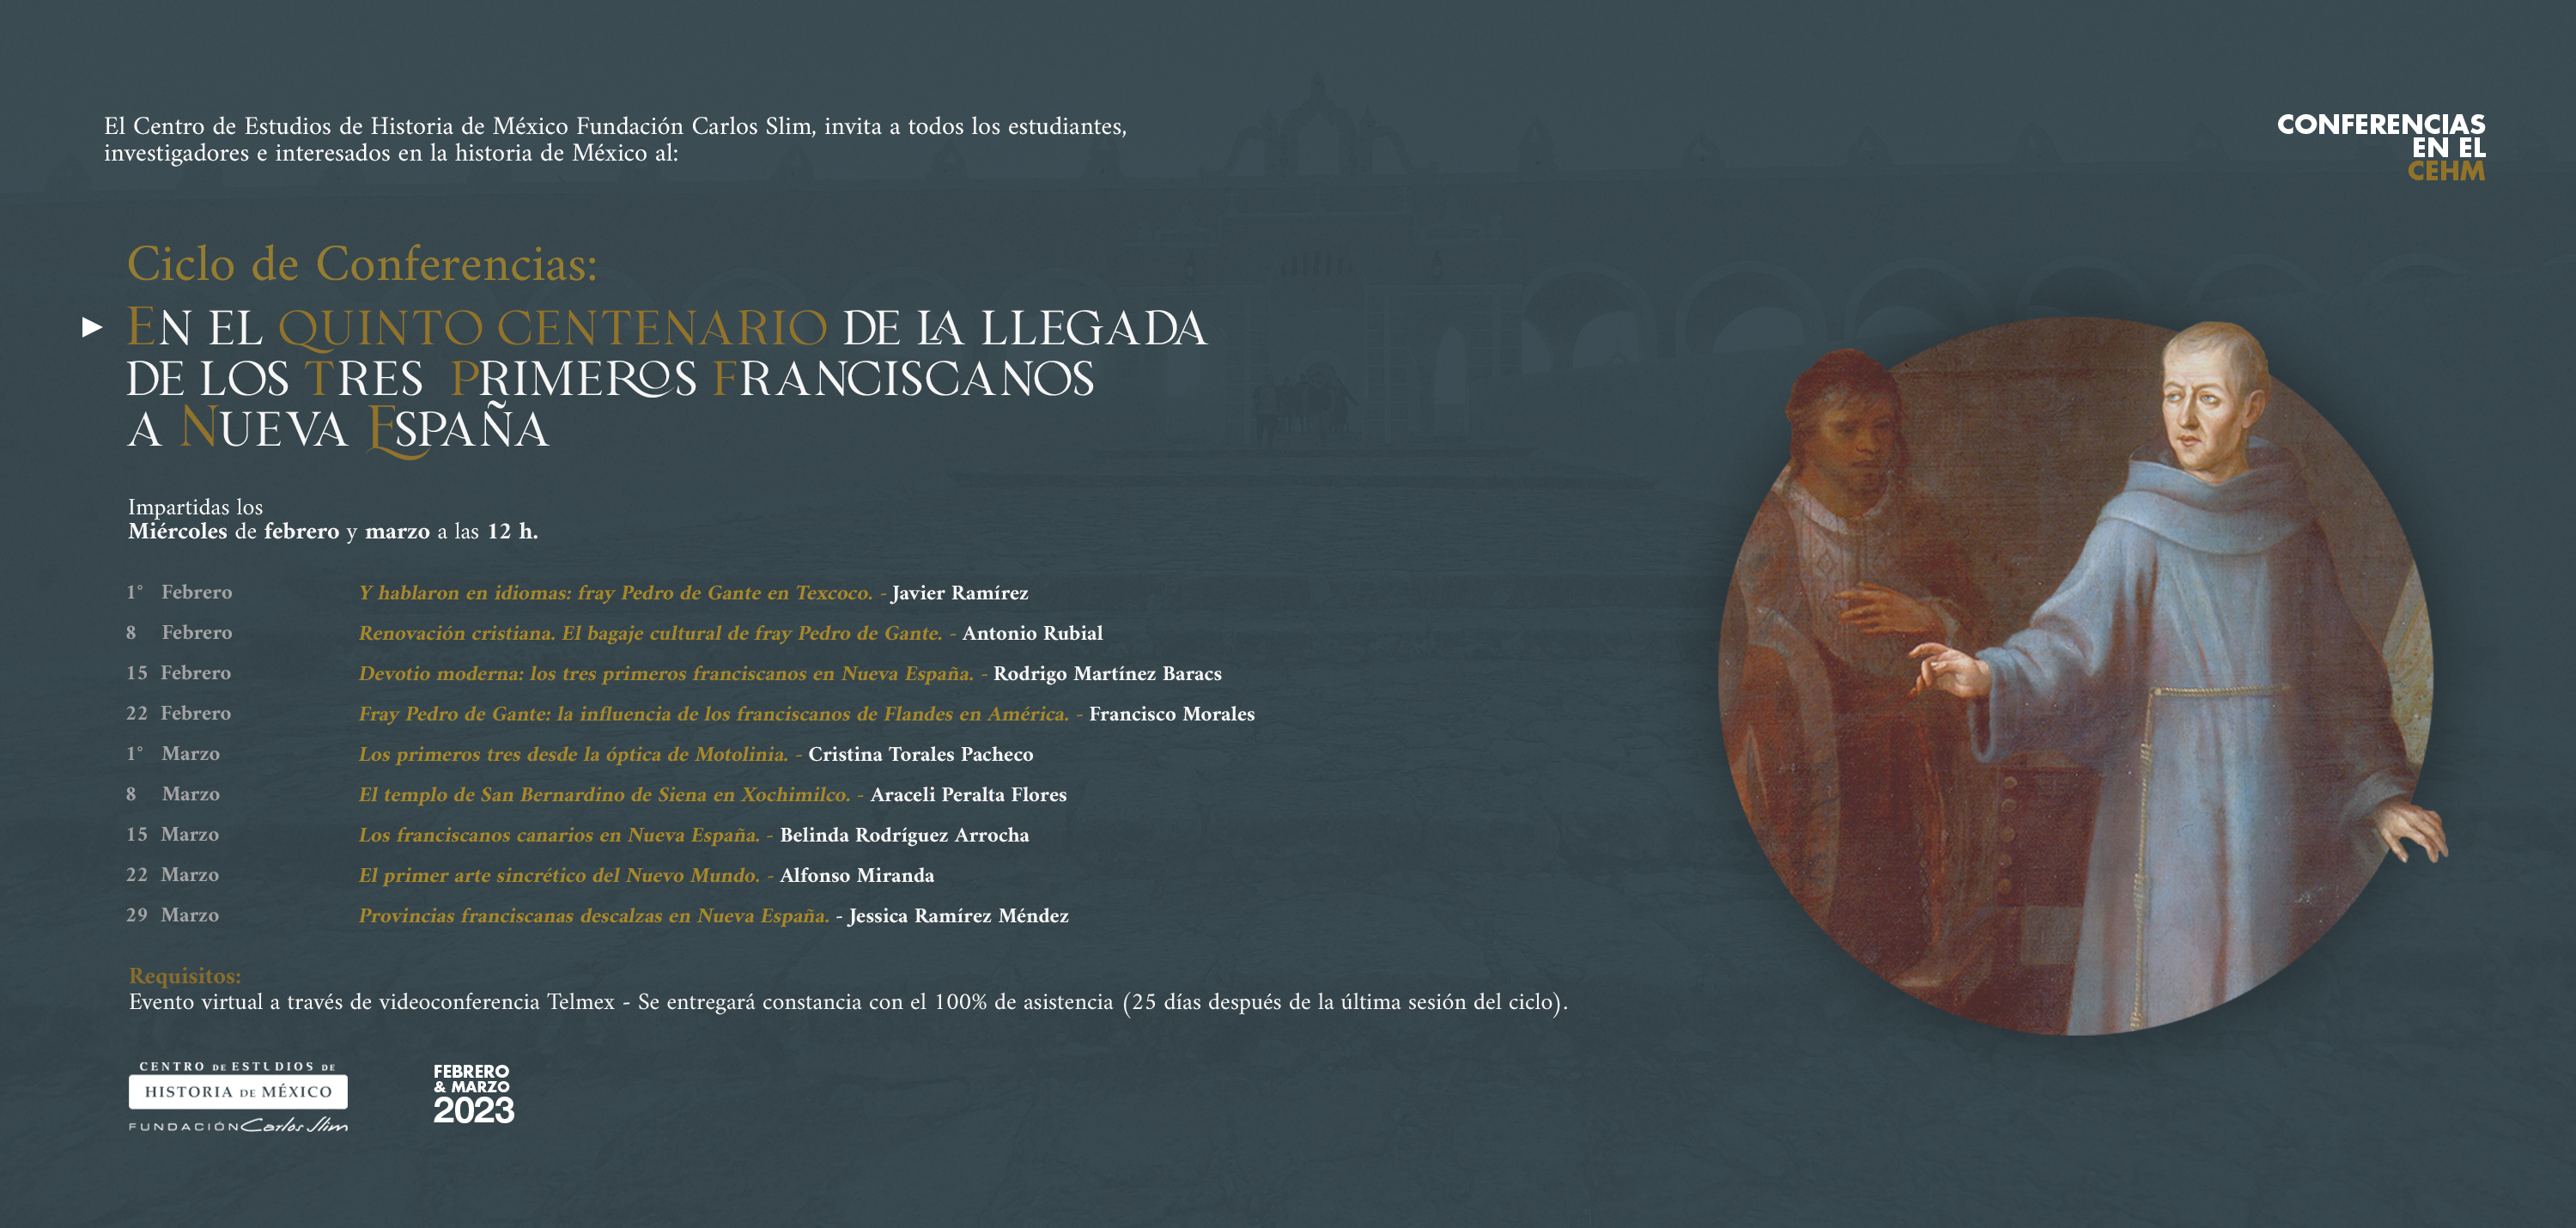 Ciclo de Conferencias Franciscanos